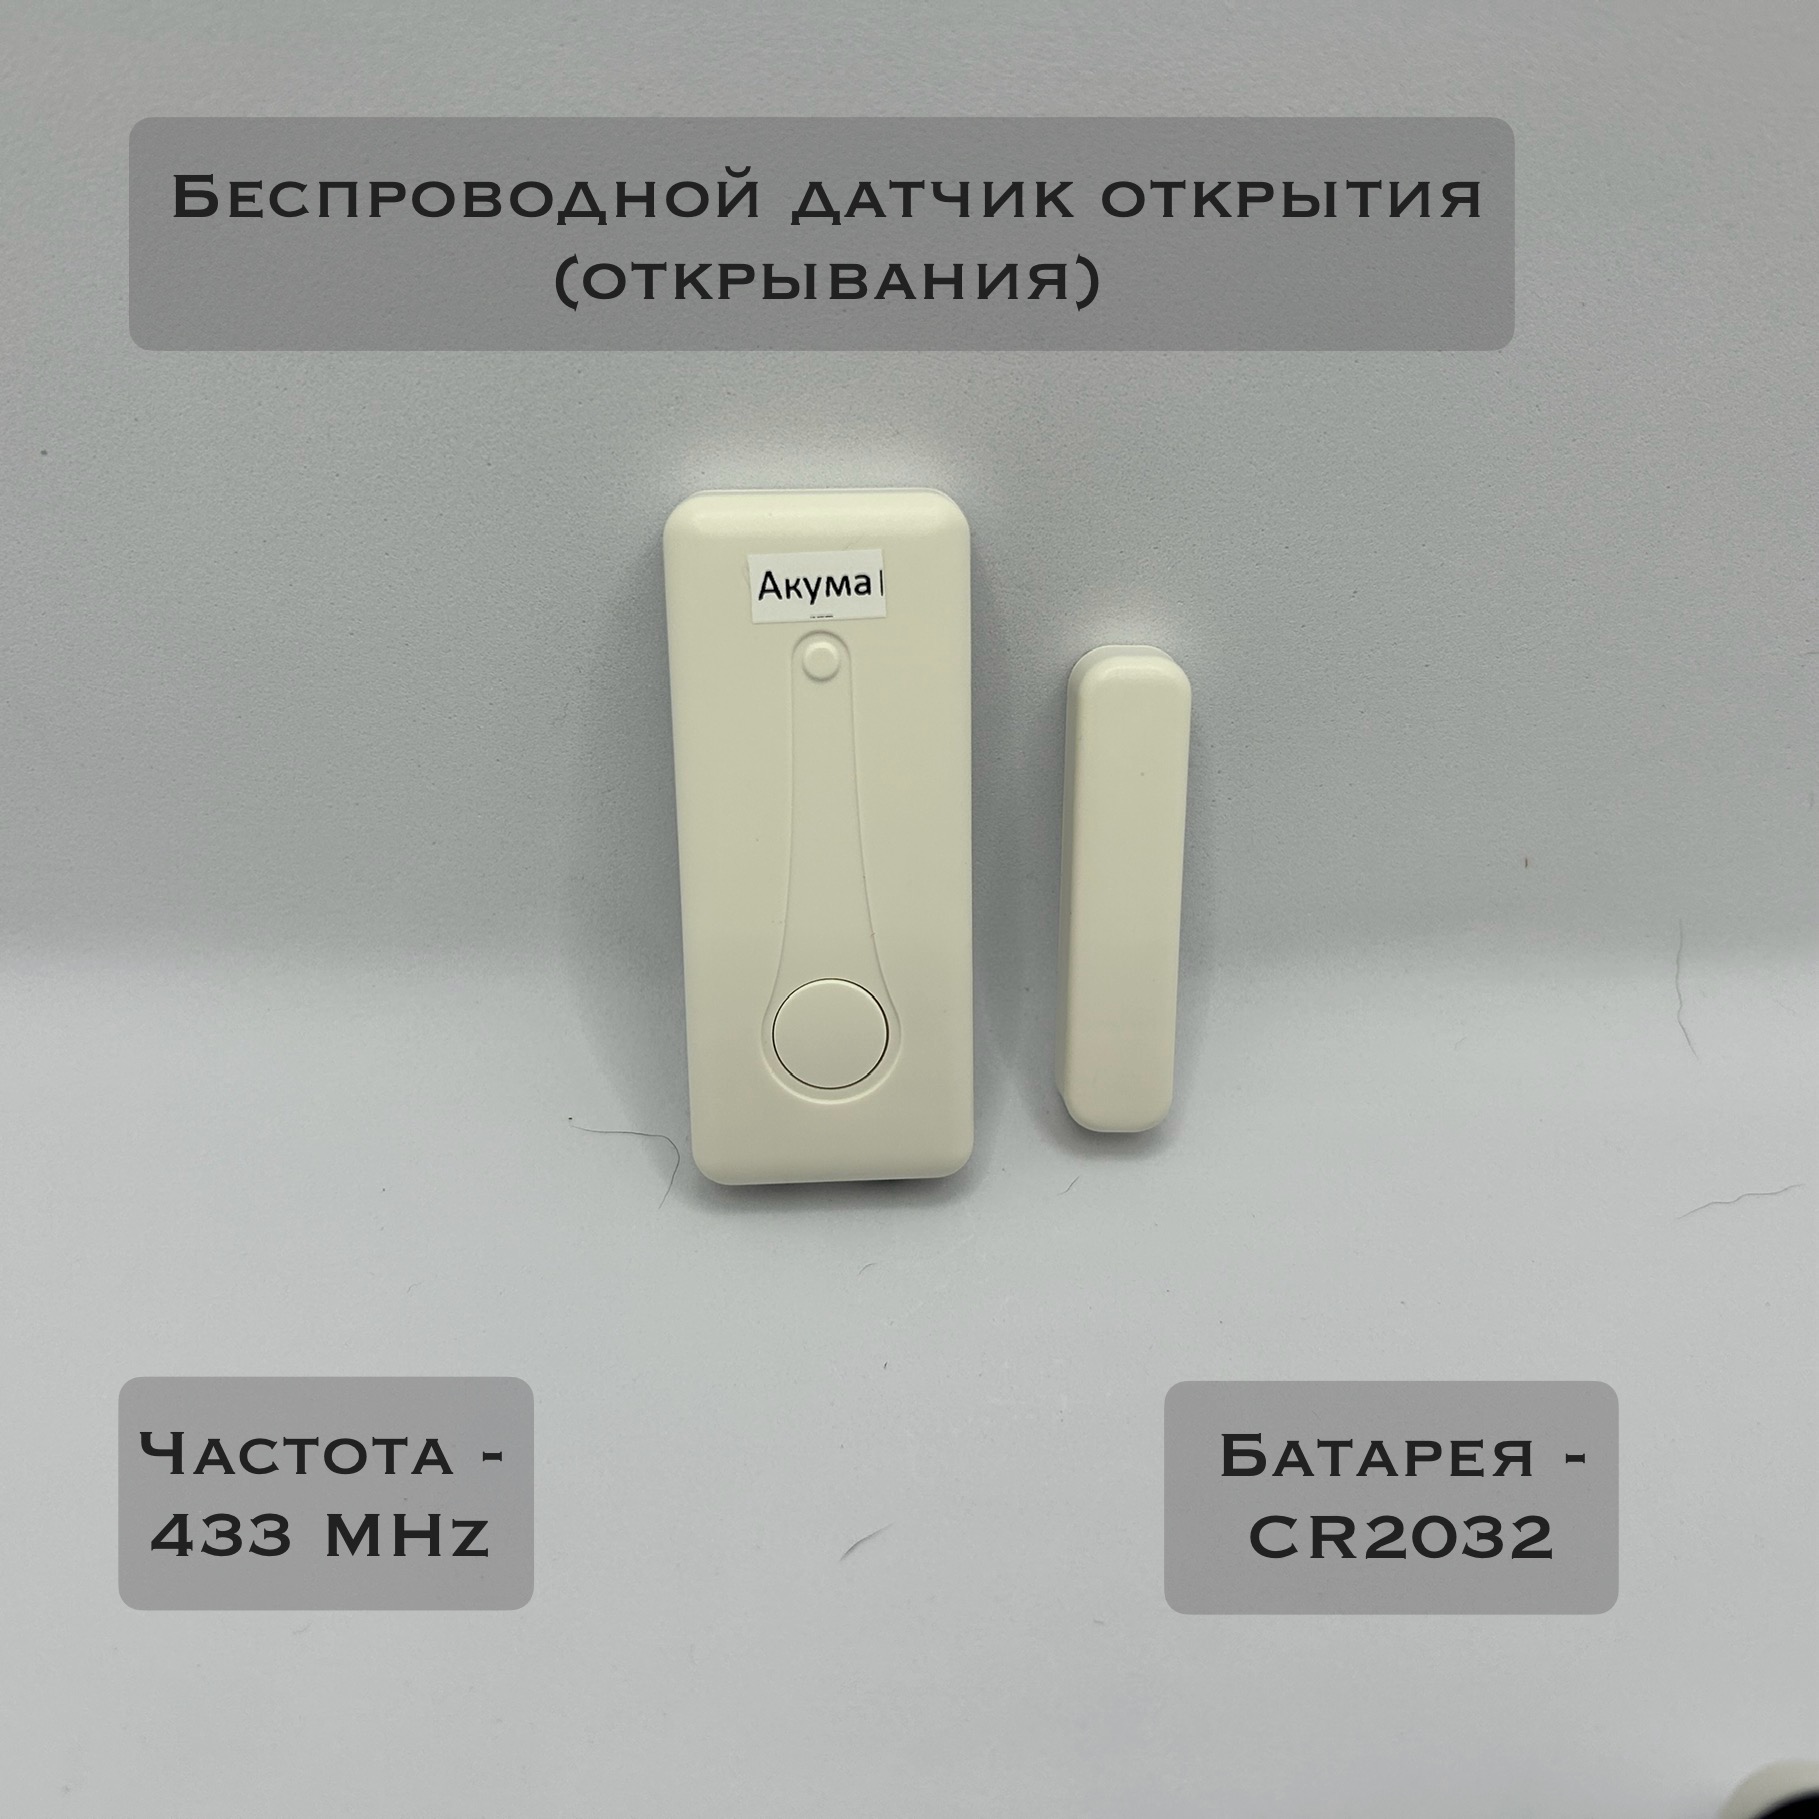 Датчик открытия для охранной системы Акума БДО-003 (беспроводной) датчик открытия для охранной сигнализации coco